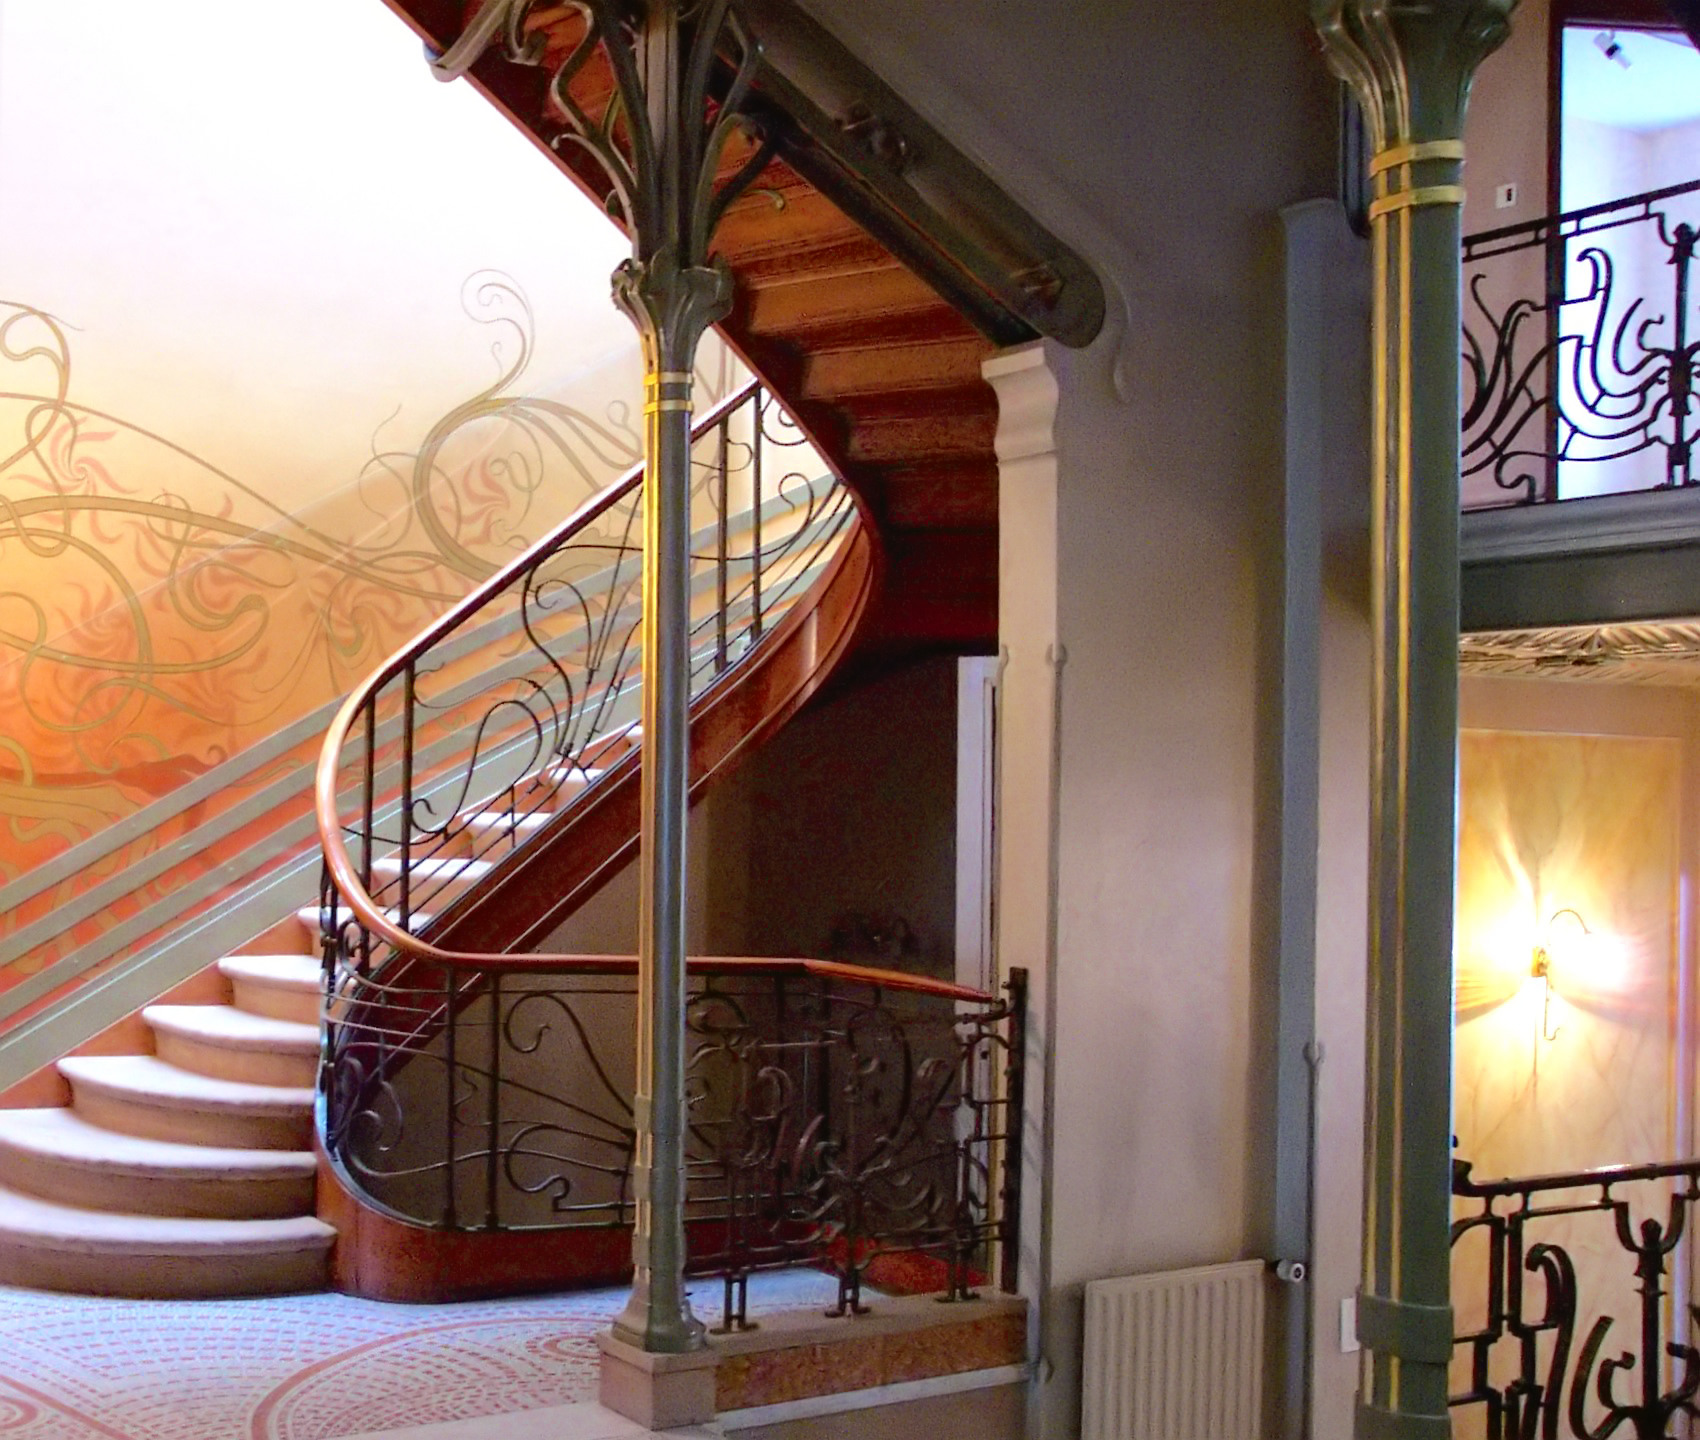 Escada da Casa Tussel, em Bruxelas, construída por Victor Horta, com detalhes curvilíneos inspirados na natureza (Foto: Henry Townsend)